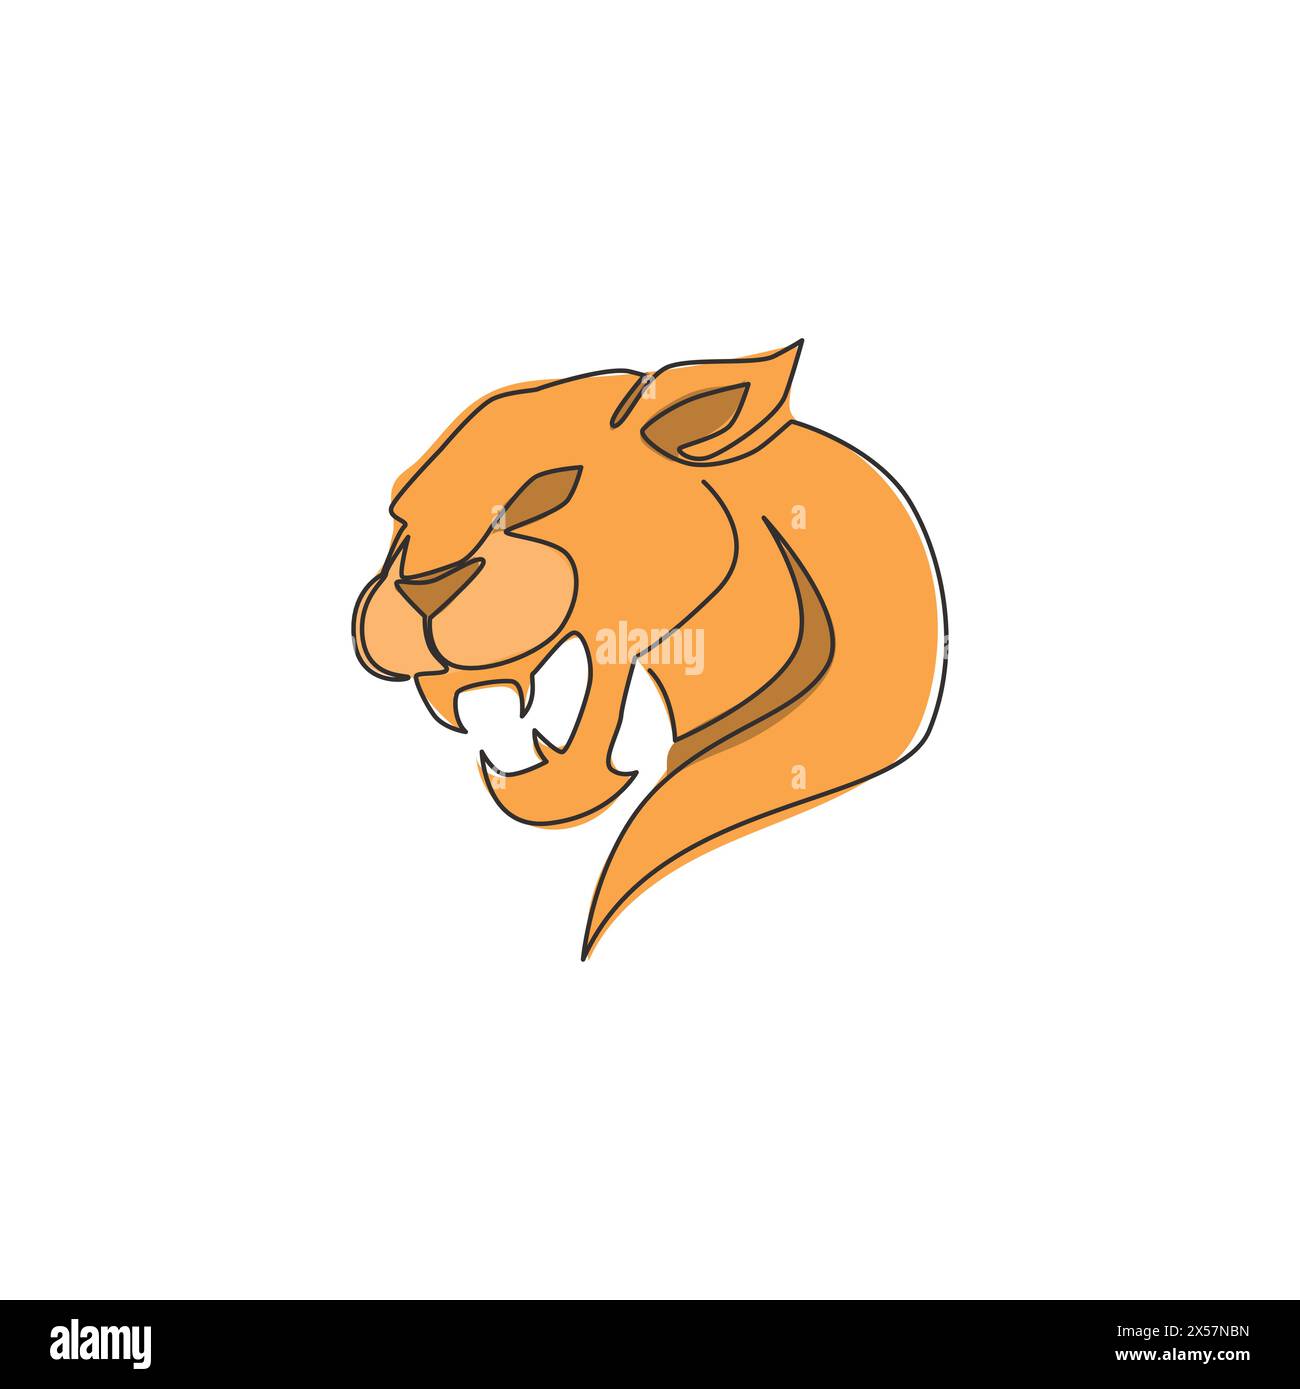 Dessin en ligne continue unique de léopard élégant pour l'identité du logo de l'équipe de chasseur. Concept de mascotte animal mammifère jaguar dangereux pour club de sport. Tendance Illustration de Vecteur